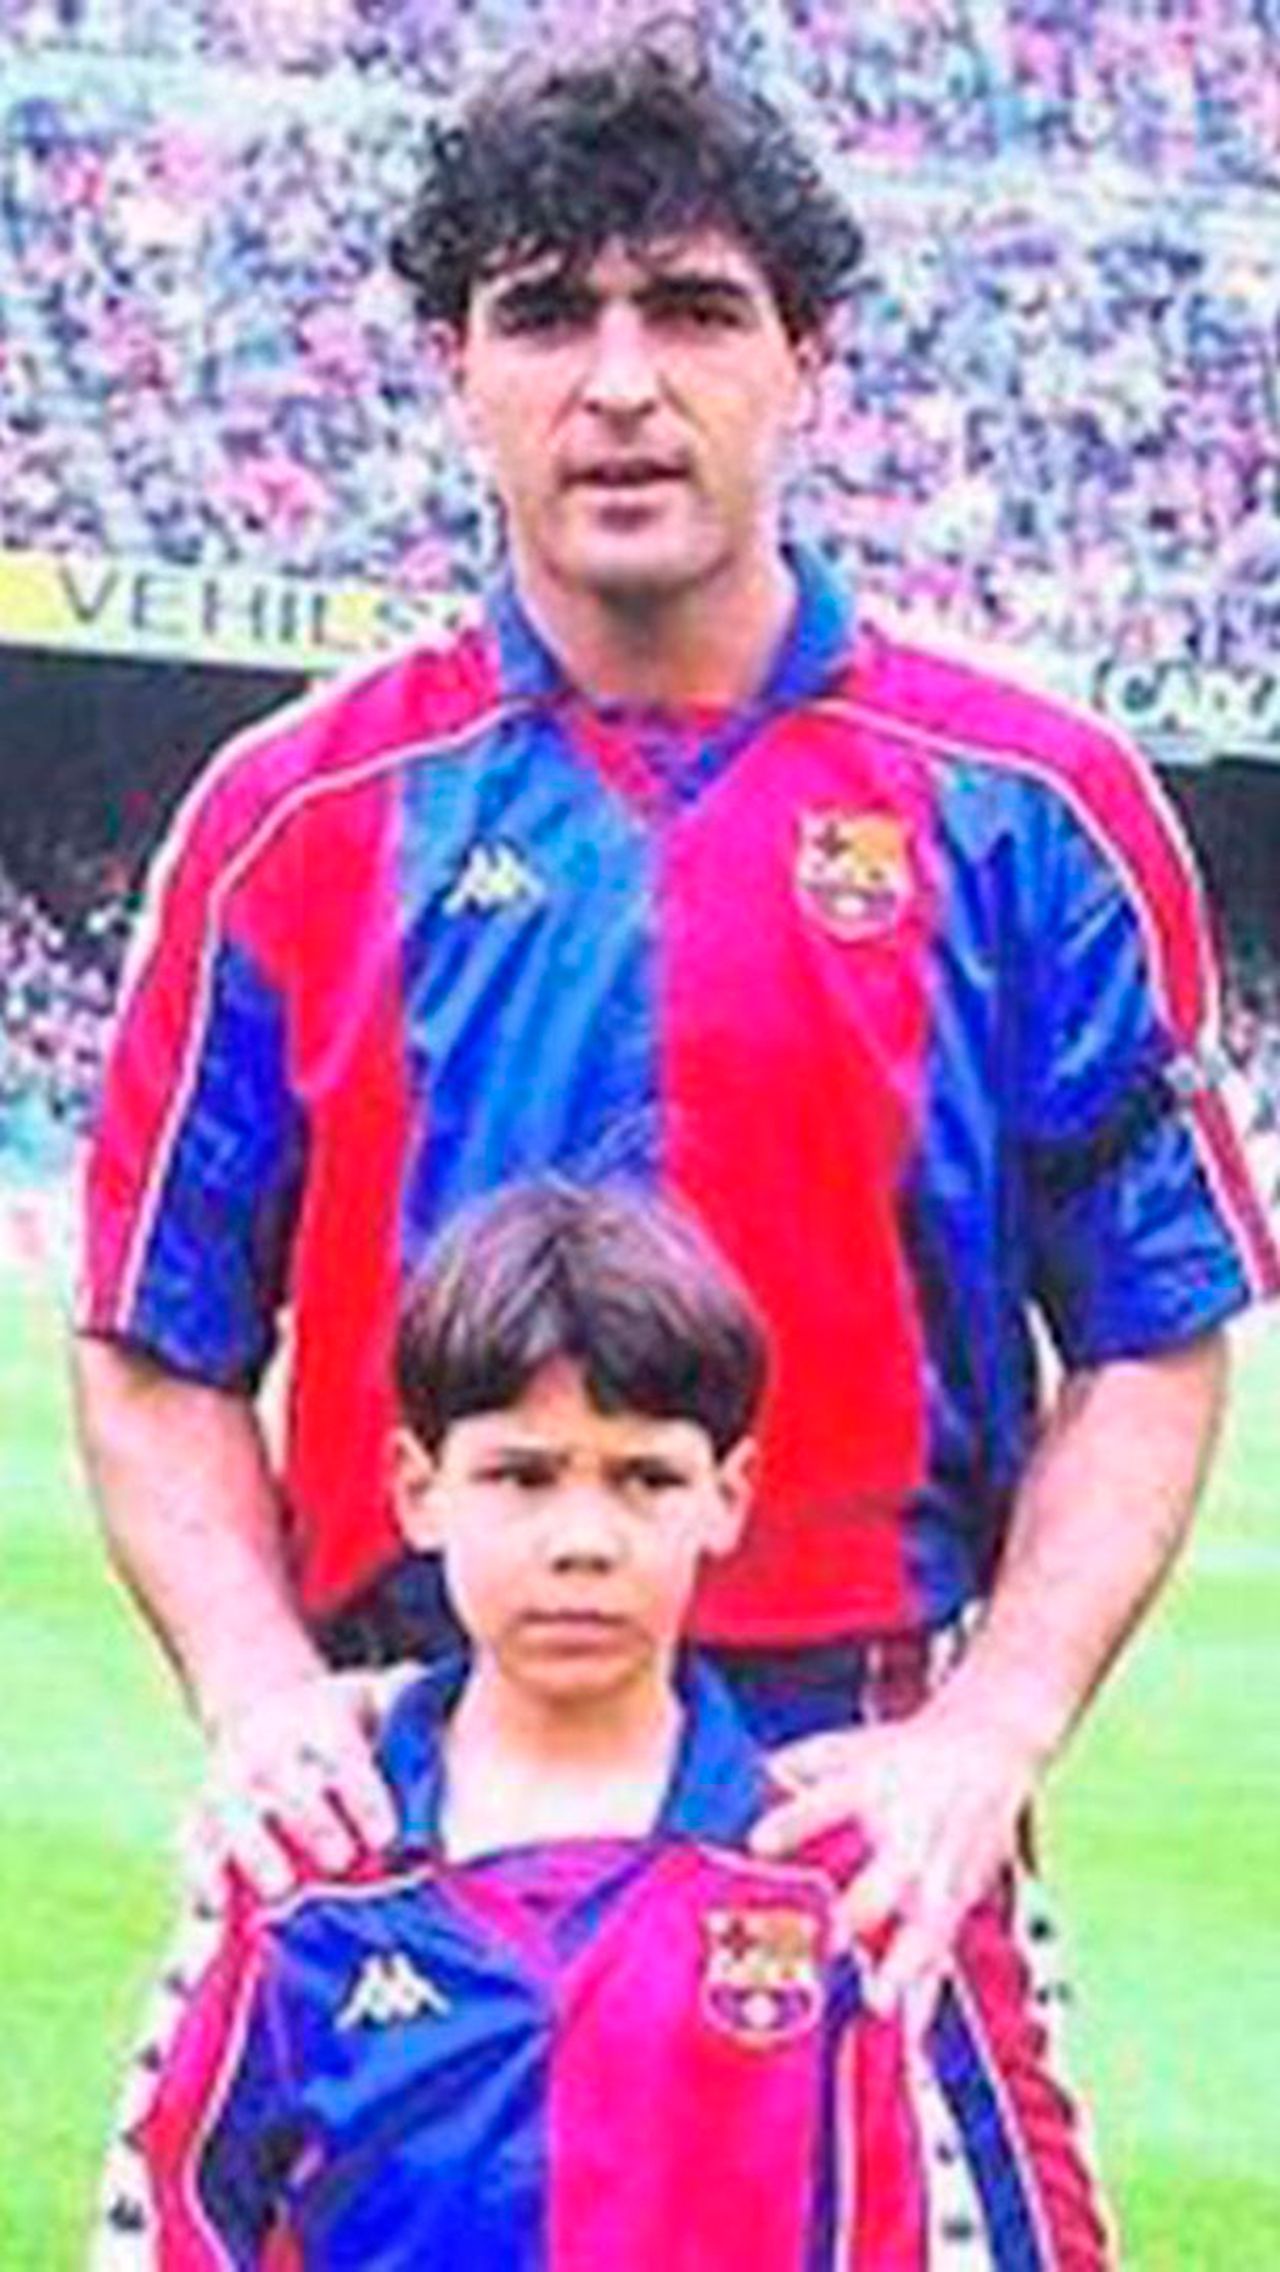 Рафаэль Надаль с детства болеет за «Реал» (Мадрид), хотя его дядя Мигель Анхель Надаль в 1990-е годы был знаменитым полузащитником «Барселоны».